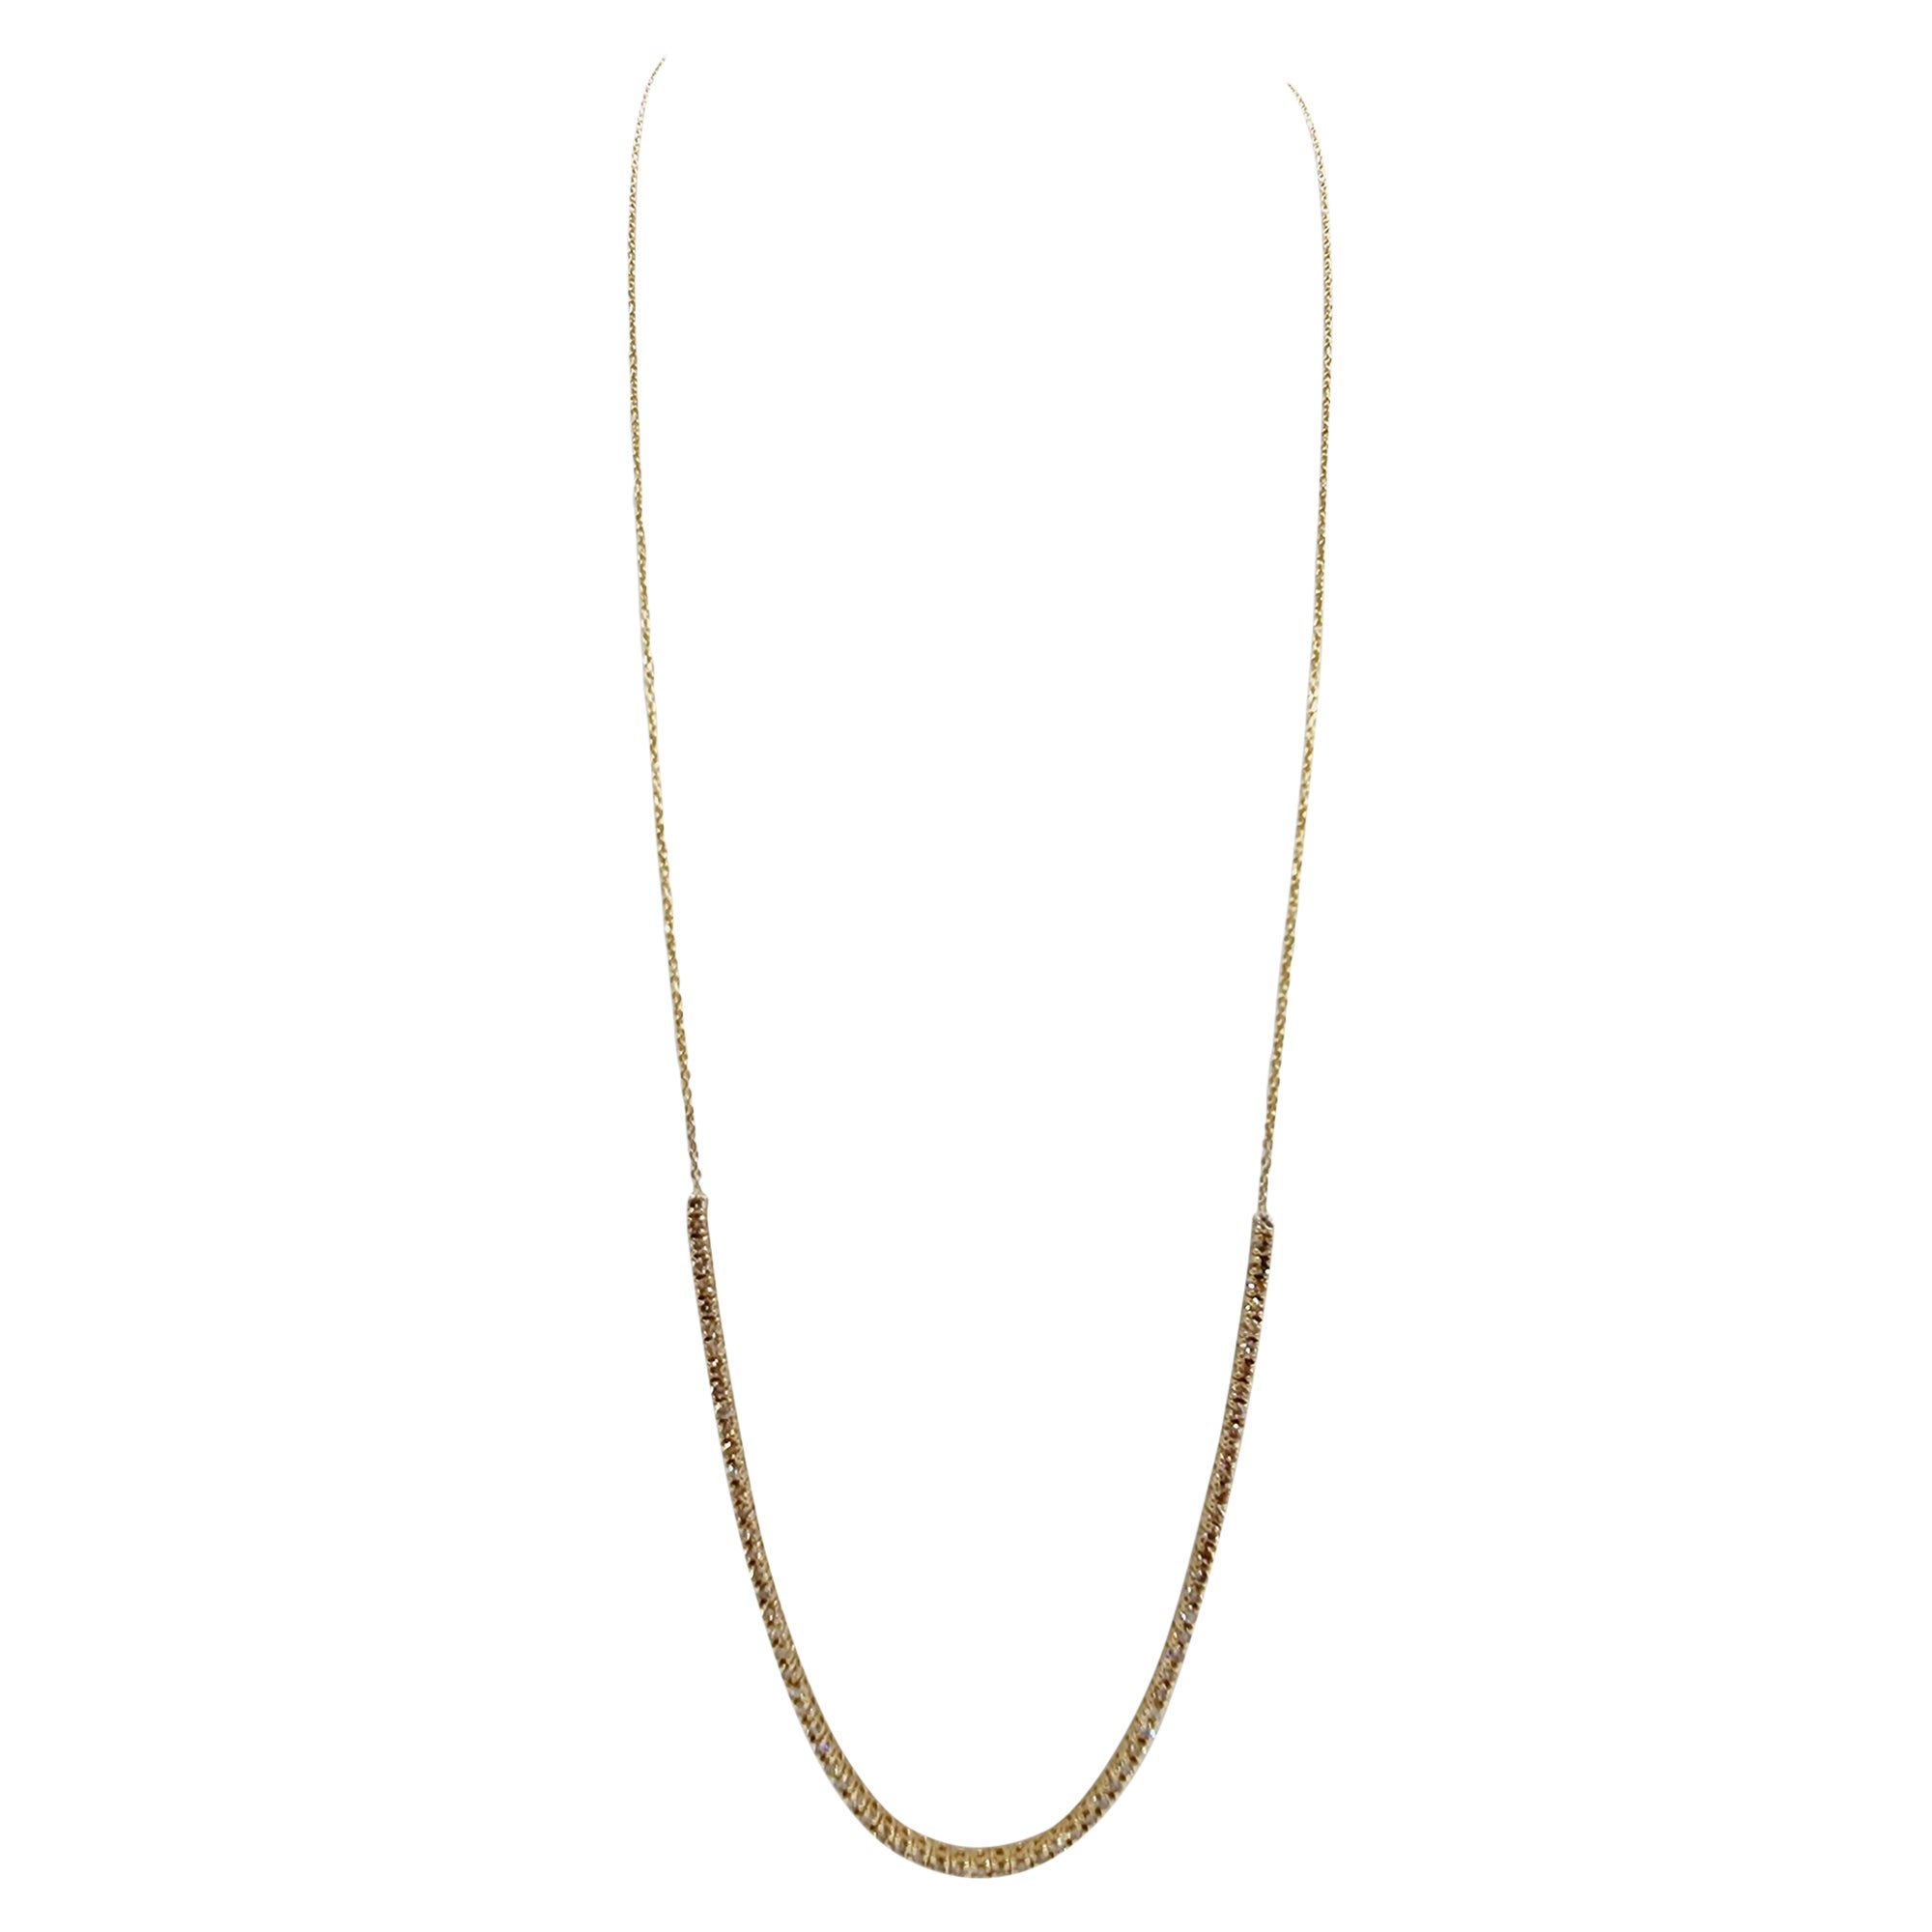 1.65 Carat Mini Diamond Necklace Chain 14 Karat Yellow Gold 16'' (Chaîne de collier en or jaune 14 carats)